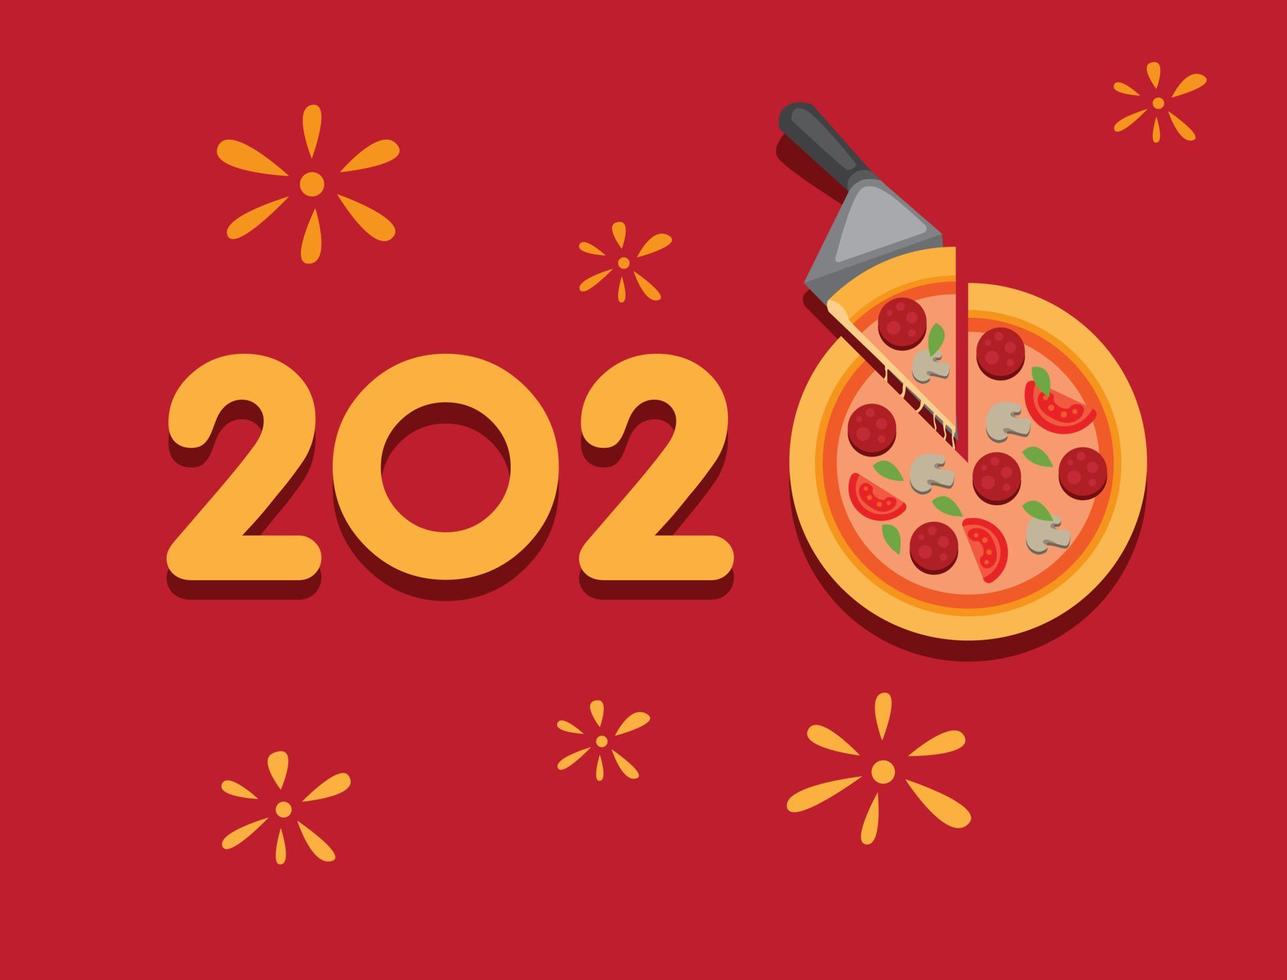 Inscrições de saudação de ano novo de 2020 em tifografia com enfeite de pizza. em fundo vermelho. vetor editável de ilustração plana